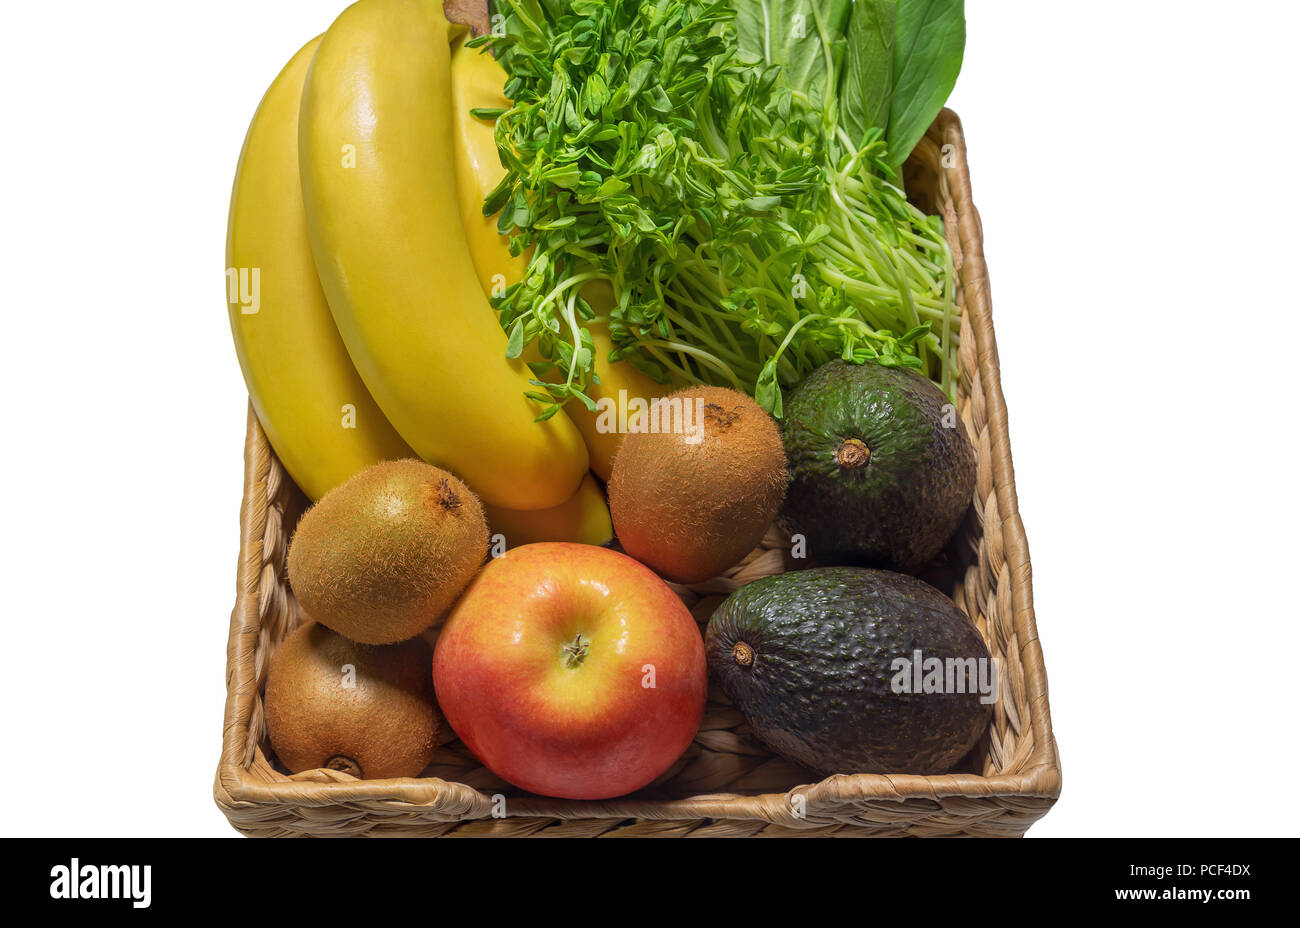 Frutta e verdure fresche in un cestello closeup.frutta e verdura, organico, sano e naturale, freshnes, dessert, gustoso,branch Foto Stock